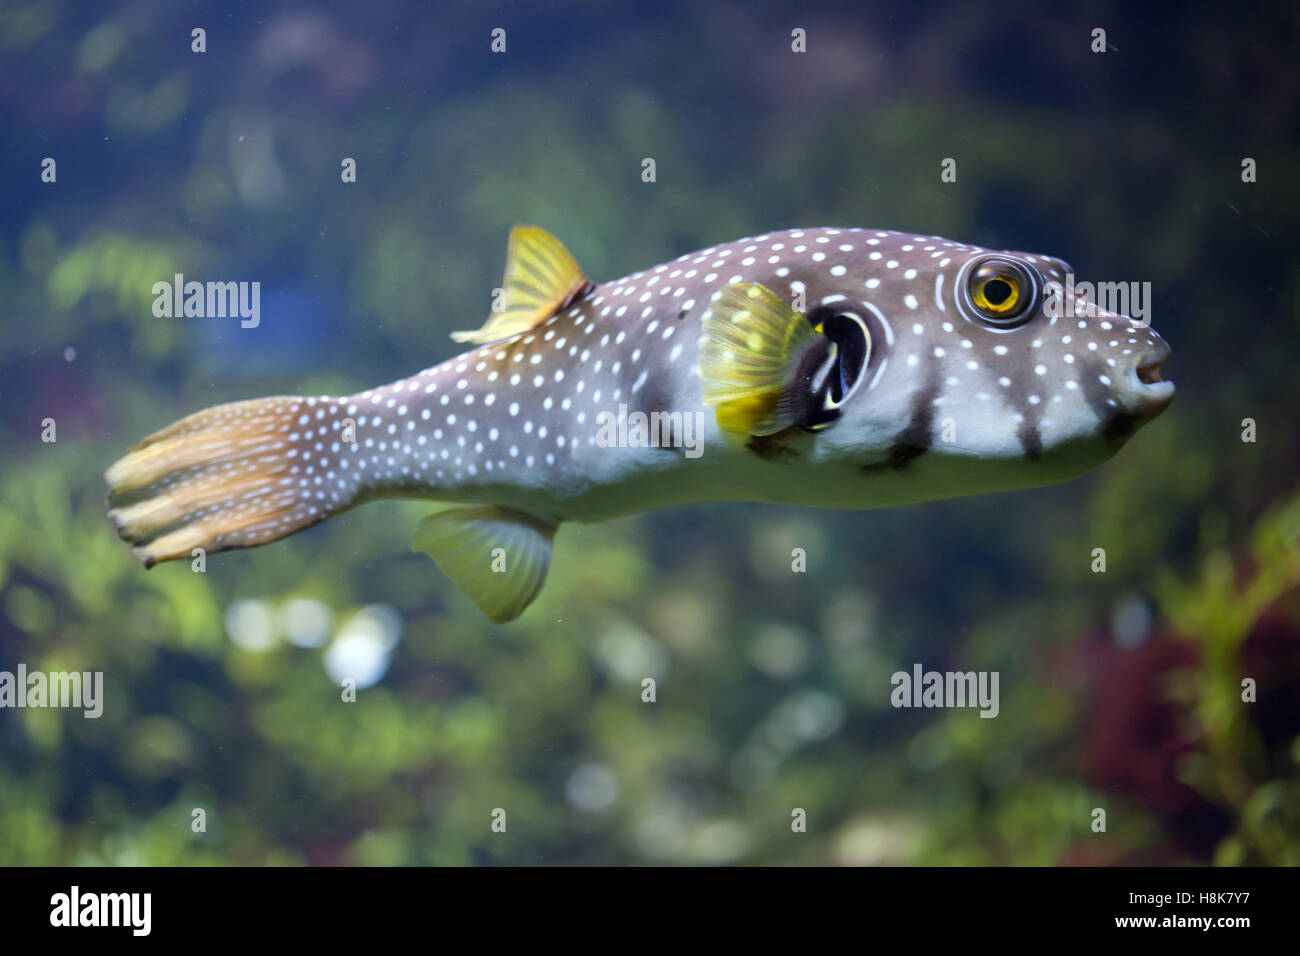 White-spotted puffer (Arothron hispidus). Marine fish. Stock Photo